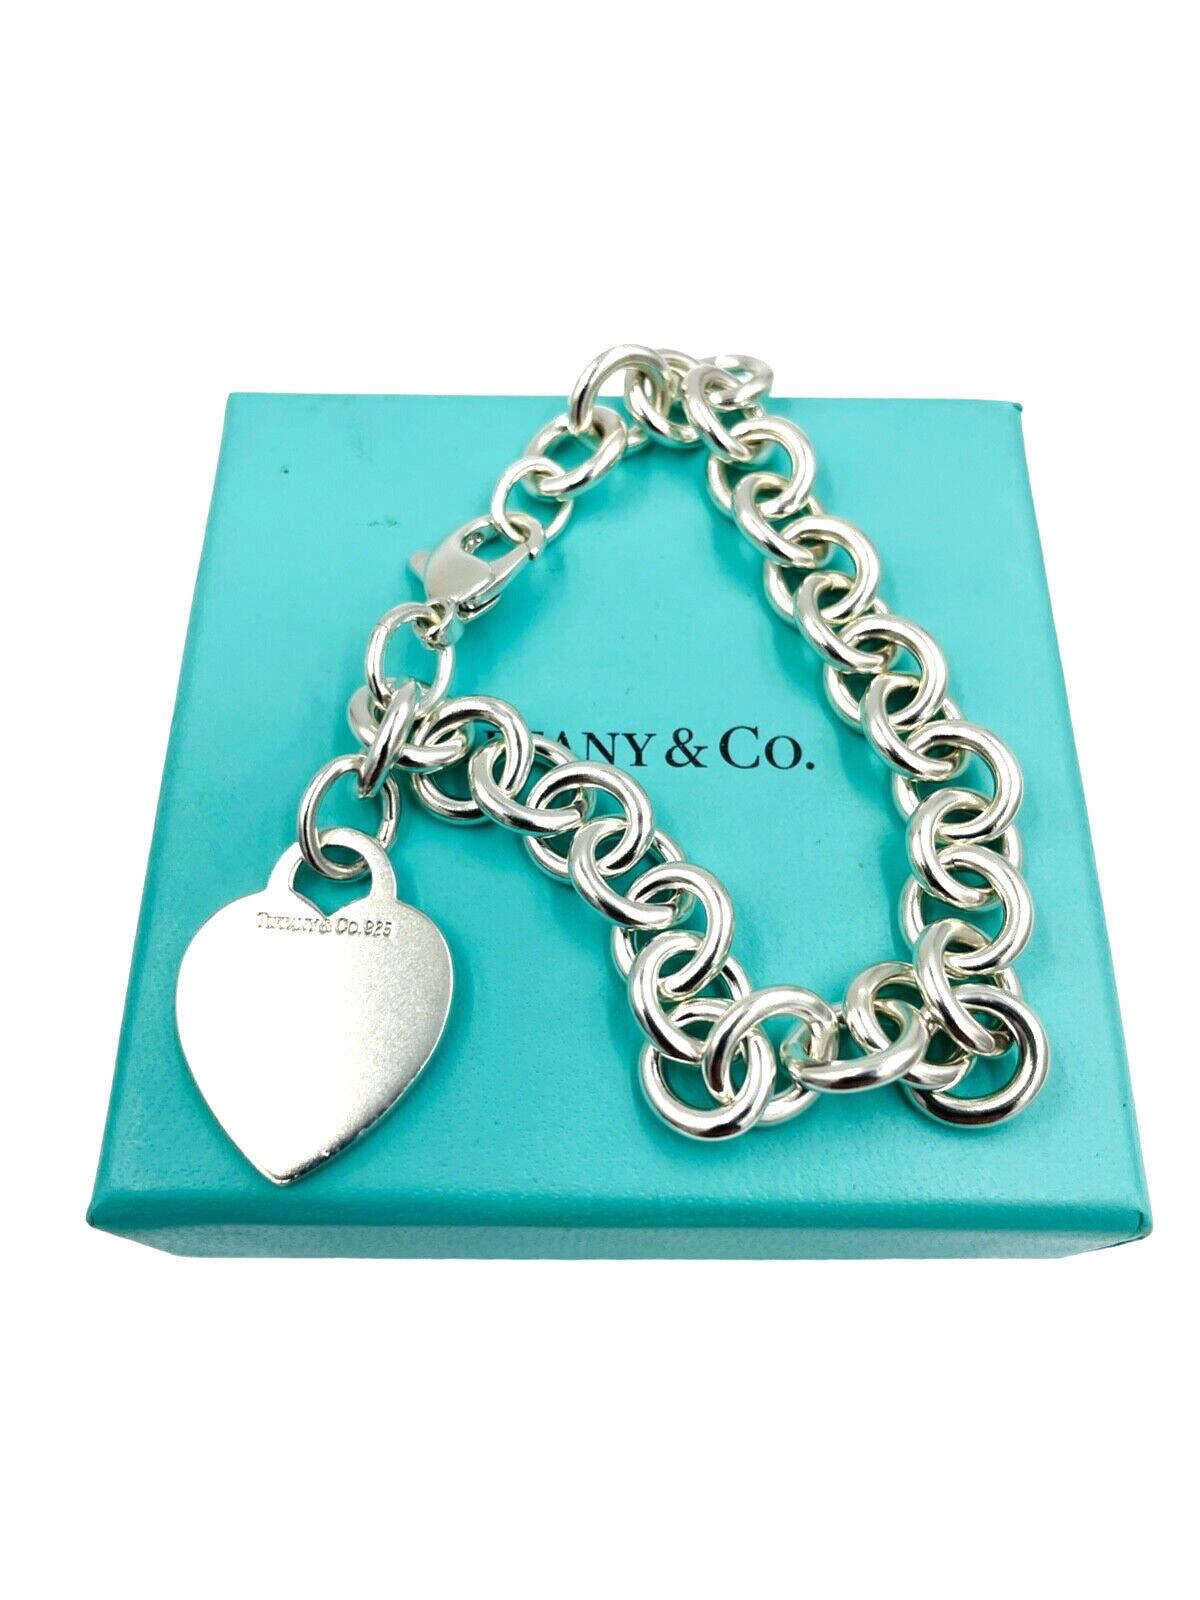 Tiffany & Co. | Jewelry | Tiffany Co Rtt Heart With Wings Charm | Poshmark